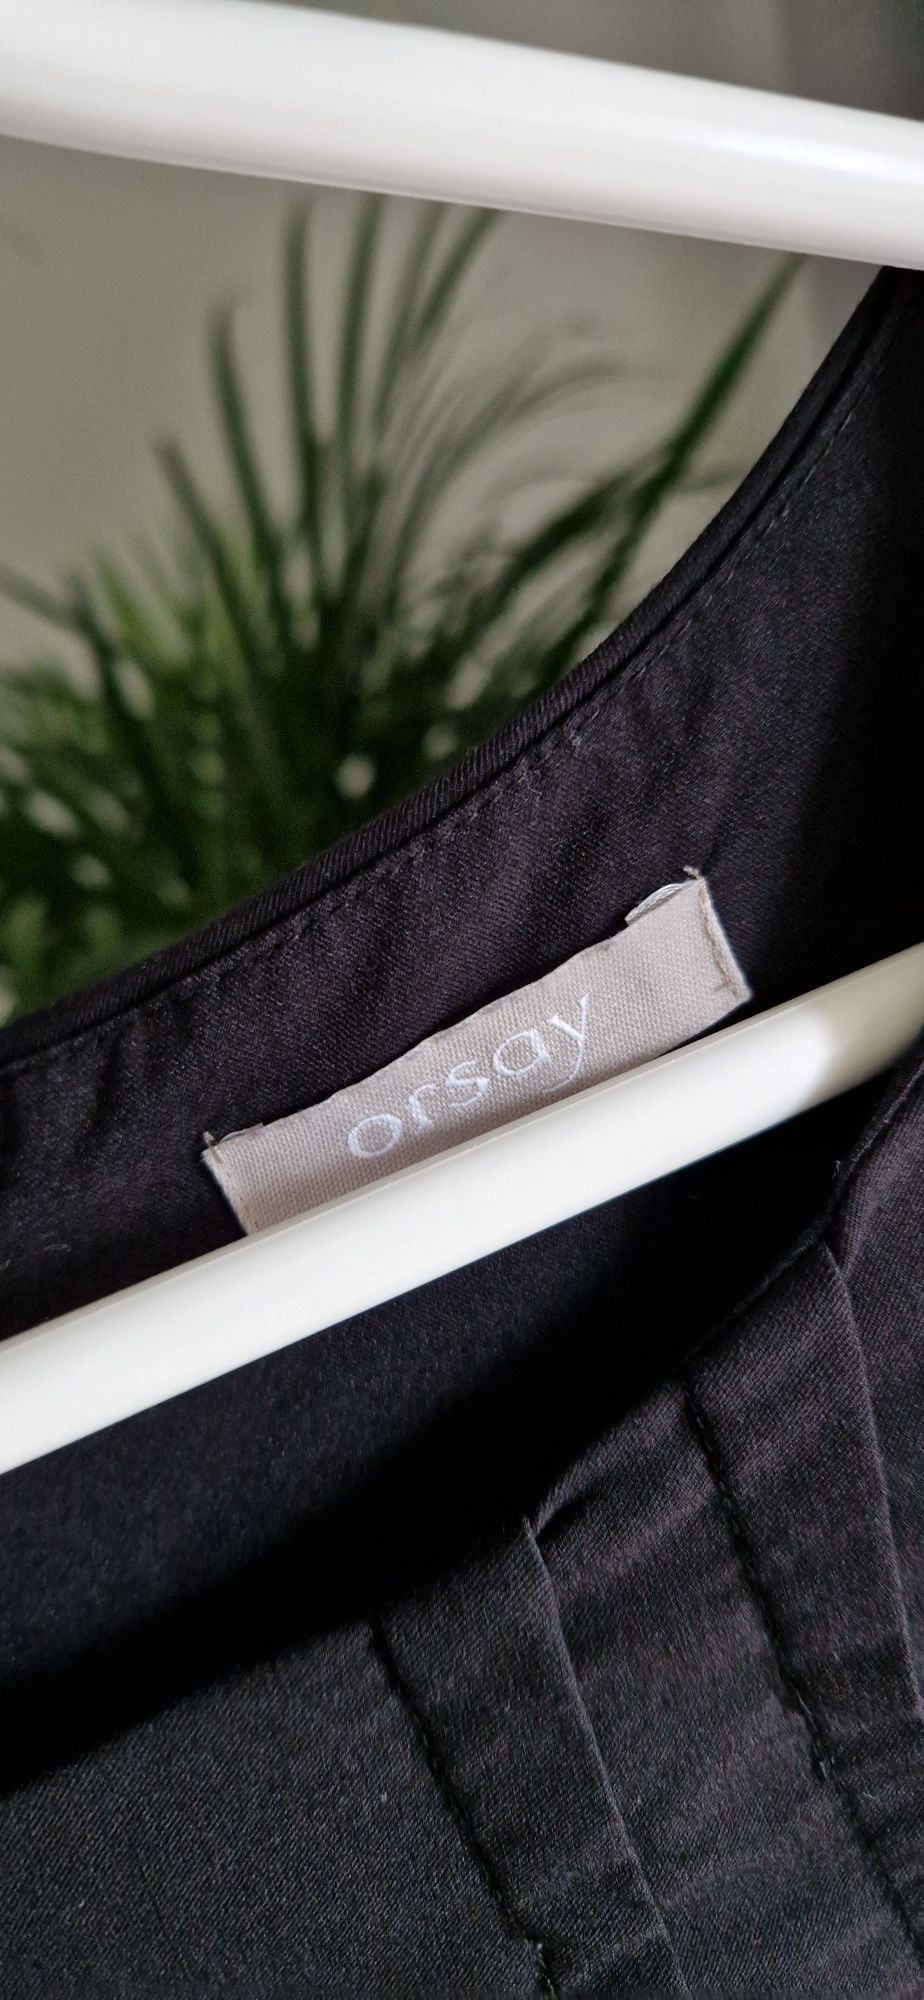 Czarna bluzka damska z baskinką Orsay rozmiar M